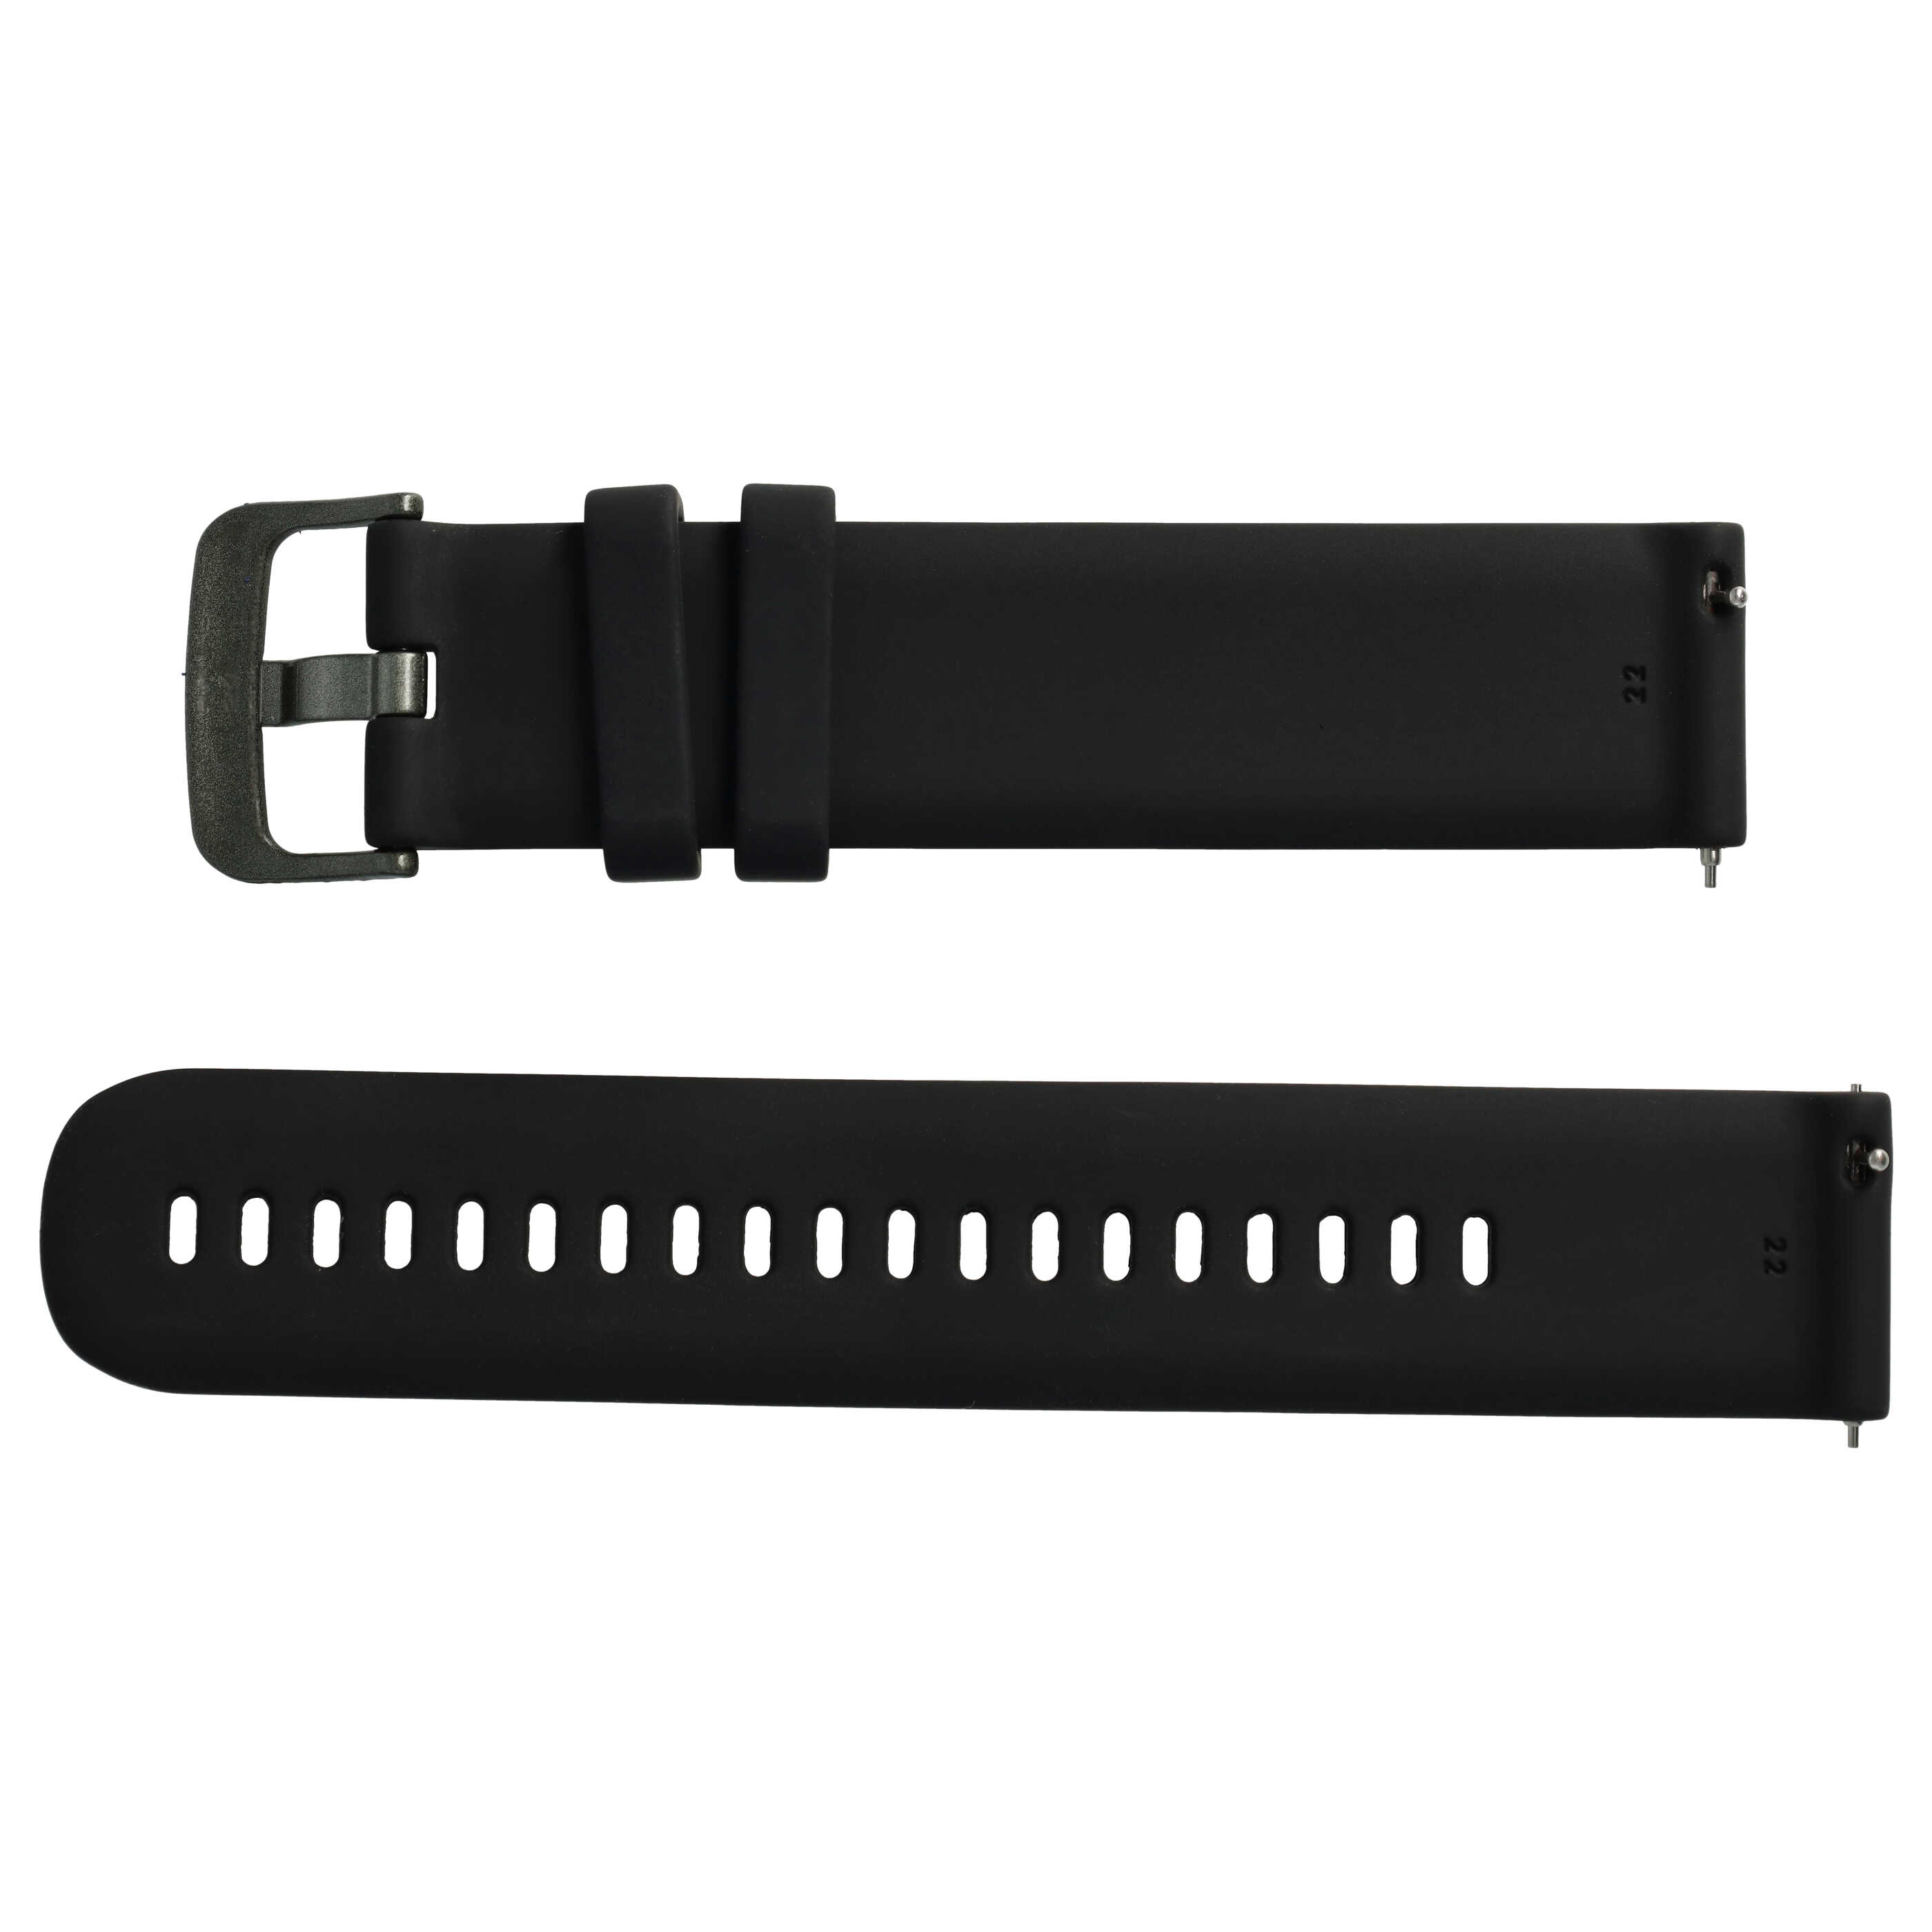 Armband L für Samsung Galaxy Watch Smartwatch - Bis 270 mm Gelenkumfang, Silikon, schwarz